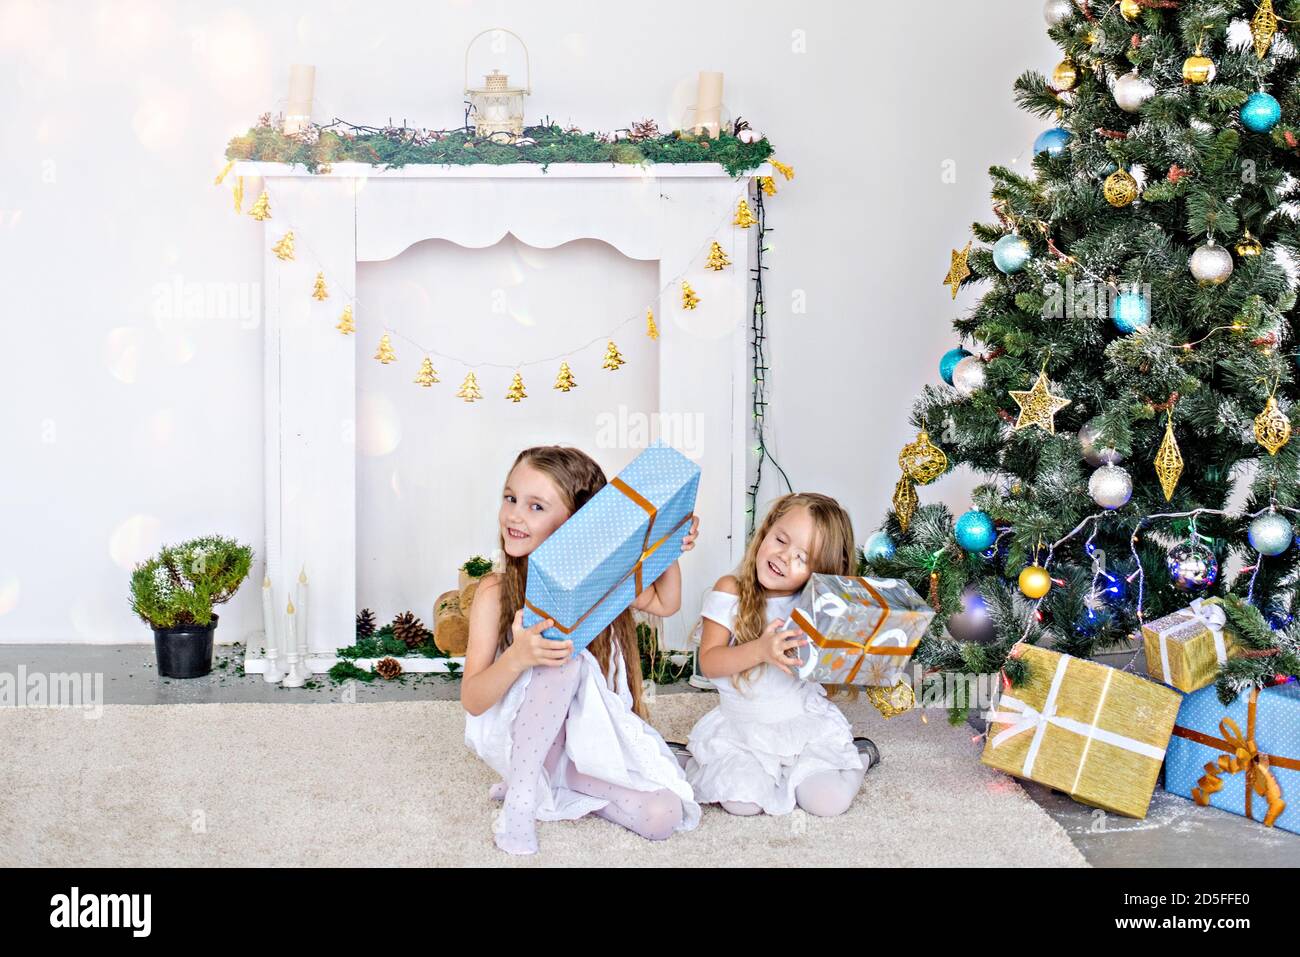 Zwei kleine blonde Mädchen in weißen Kleidern spielen am Kamin und am Weihnachtsbaum mit Kisten. Schwestern haben Spaß, umarmen, lachen, entfalten Geschenke Stockfoto